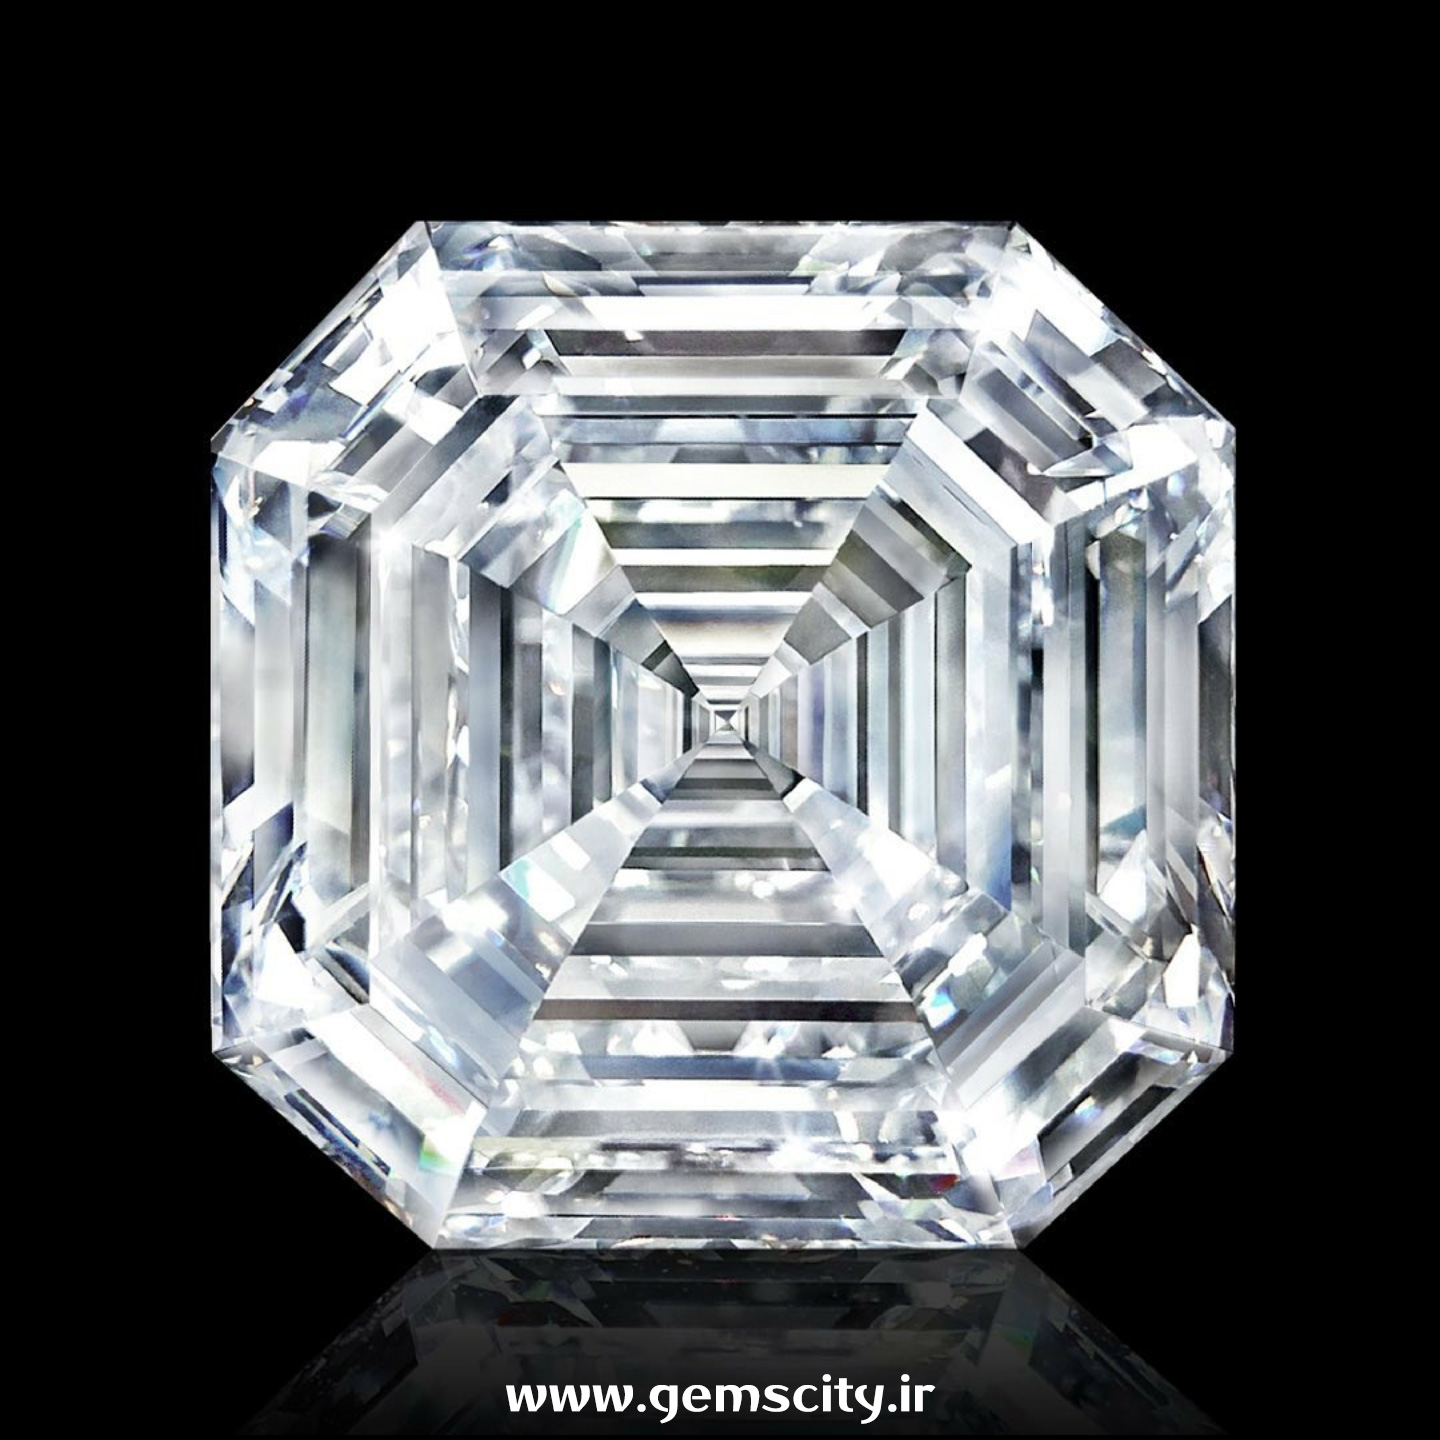 تشخیص معدن کشور مبدا الماس